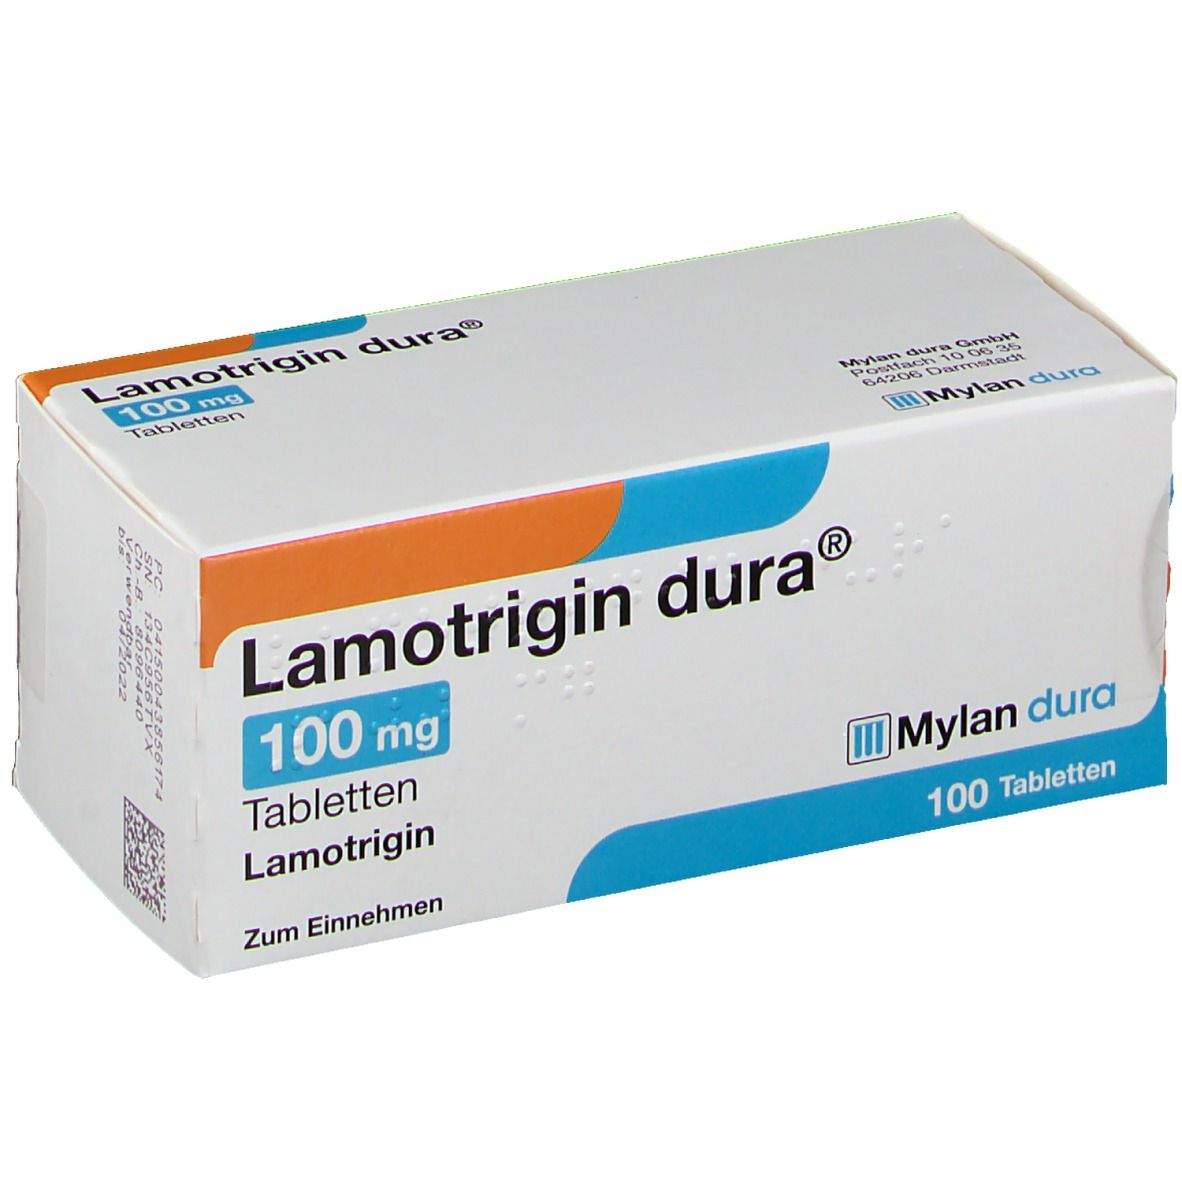 Lamotrigin dura® 100 mg